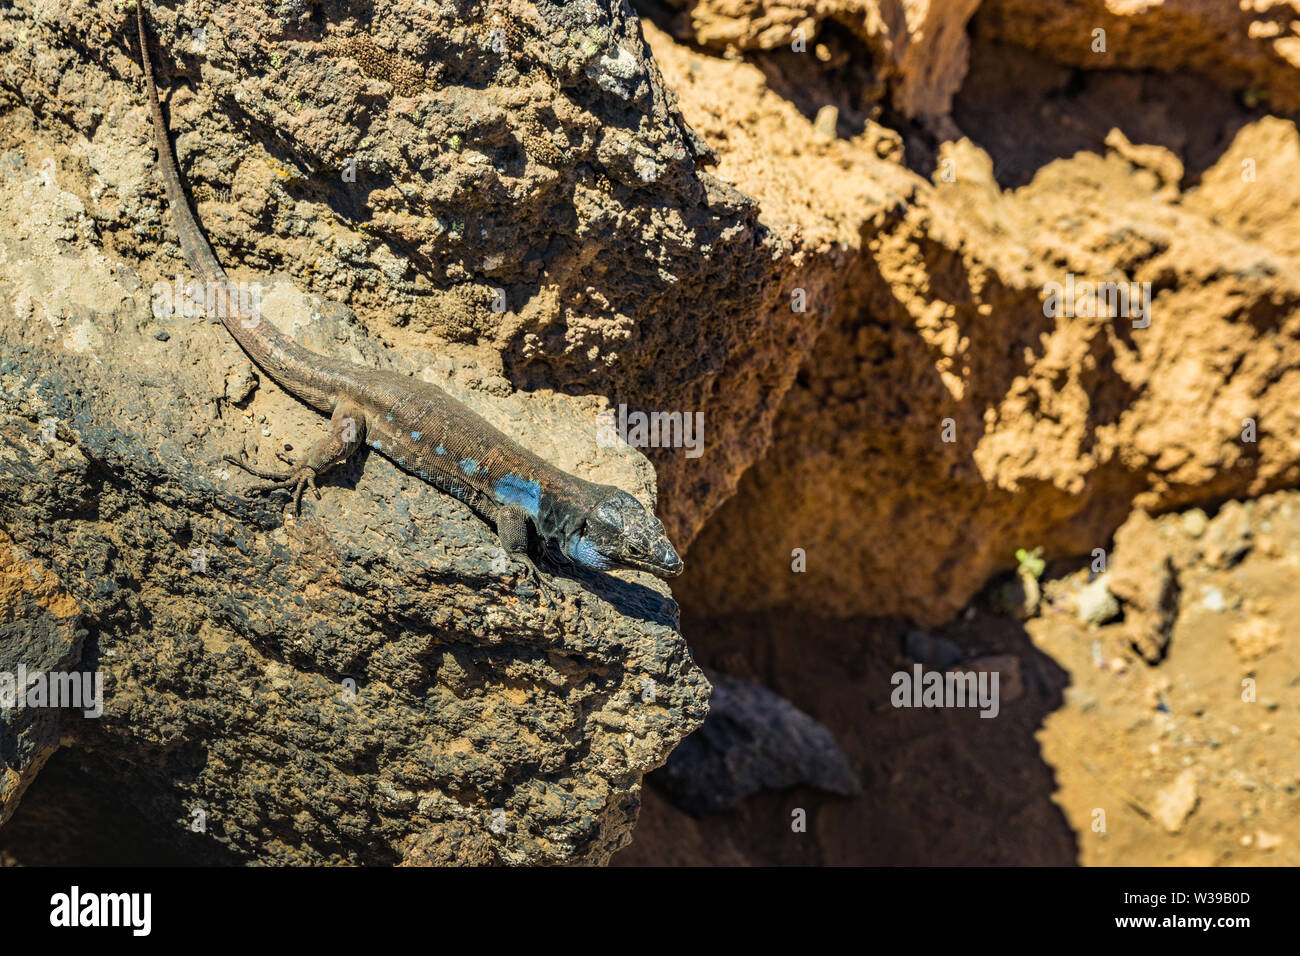 Comptabilité - lézard Gallotia galloti se repose sur la pierre de lave volcanique. Le lézard regarde la caméra, gros plan, macro, fond naturel. Par National Banque D'Images